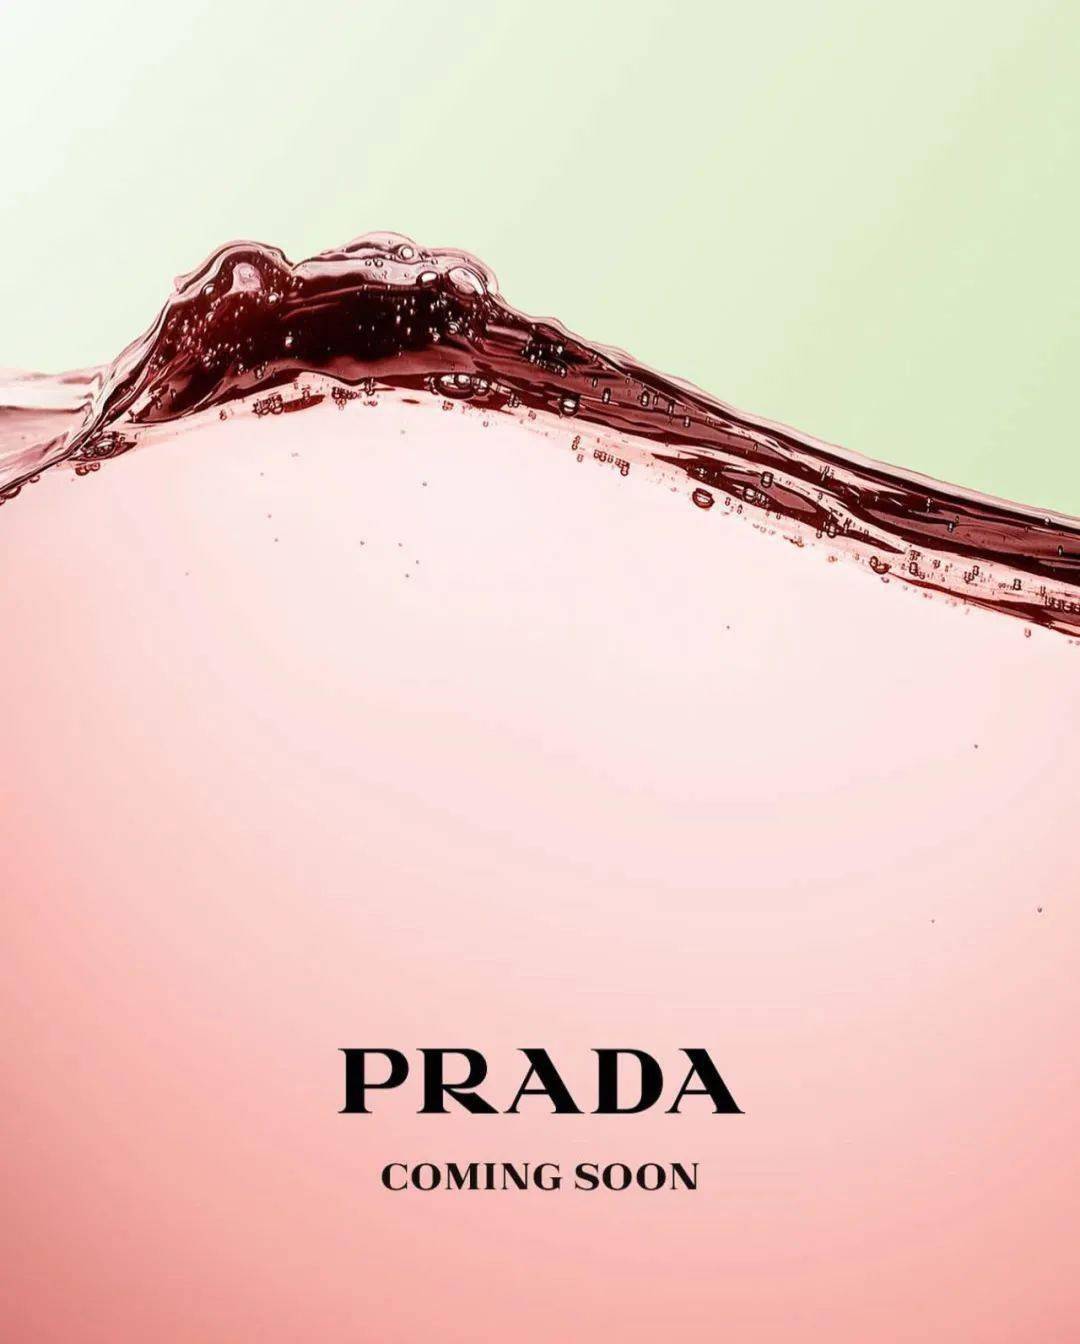 普拉达设立美妆副线Prada Beauty 深耕美妆香水领域